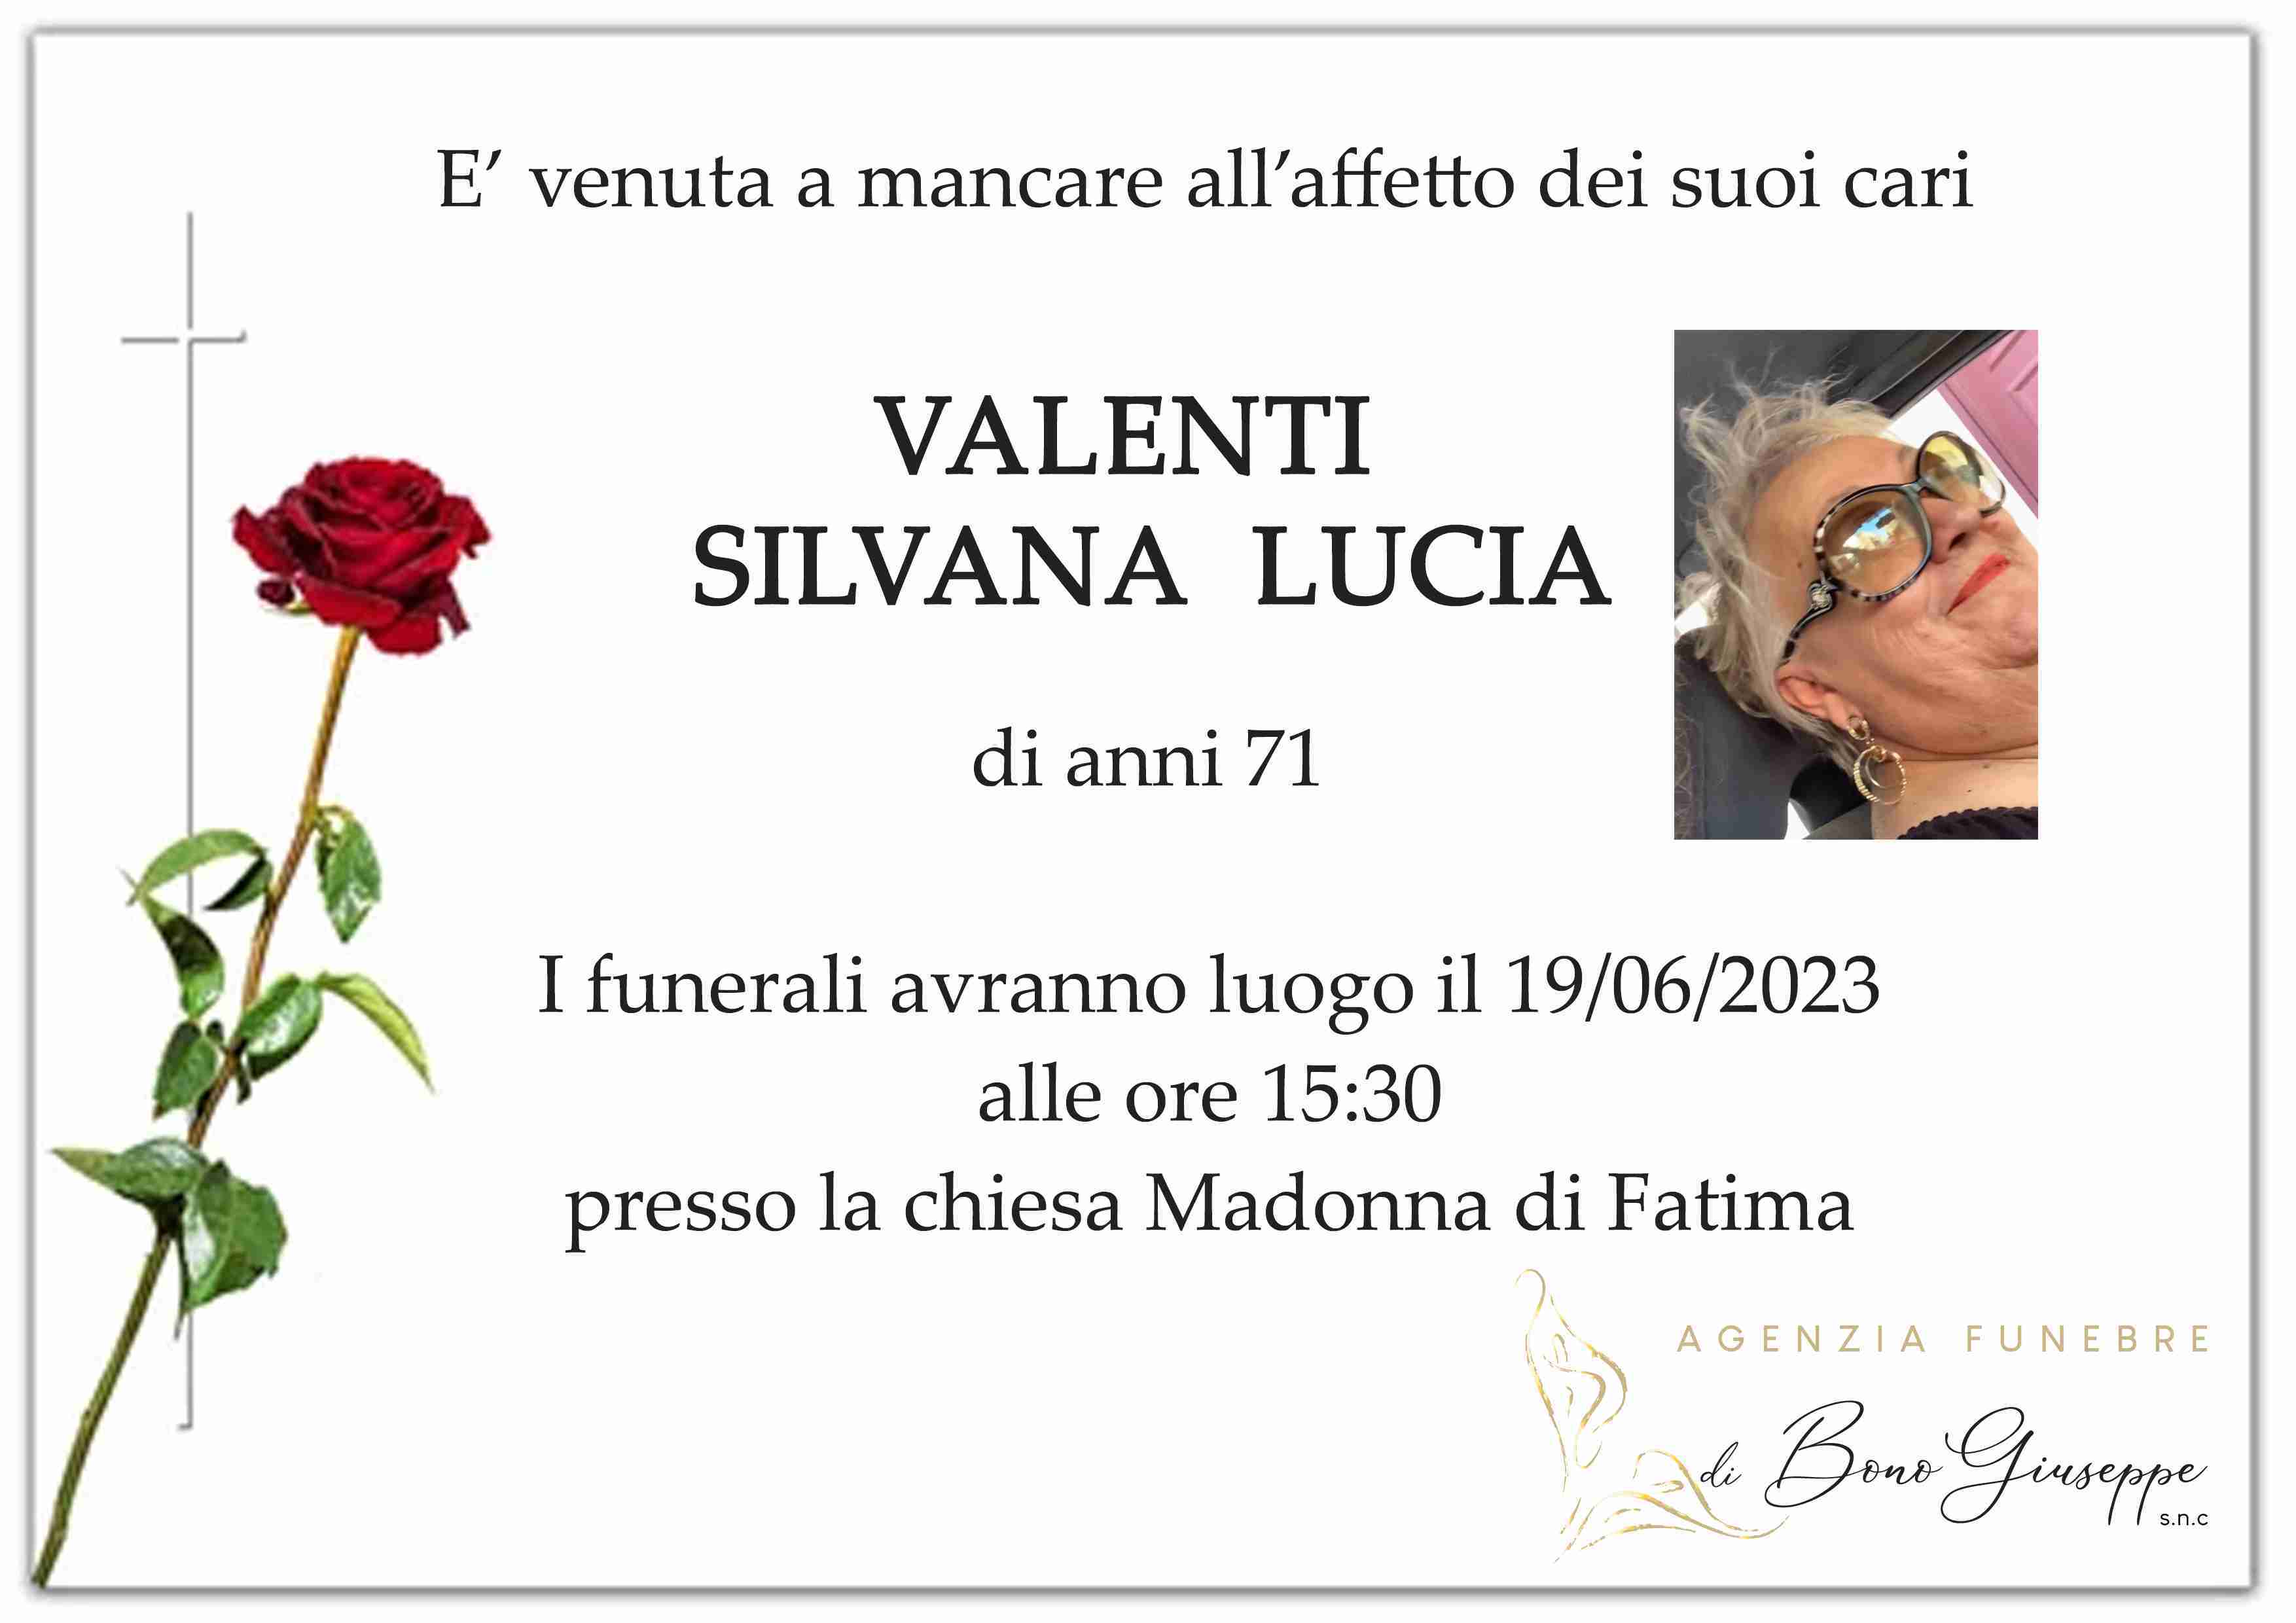 Silvana Lucia Valenti